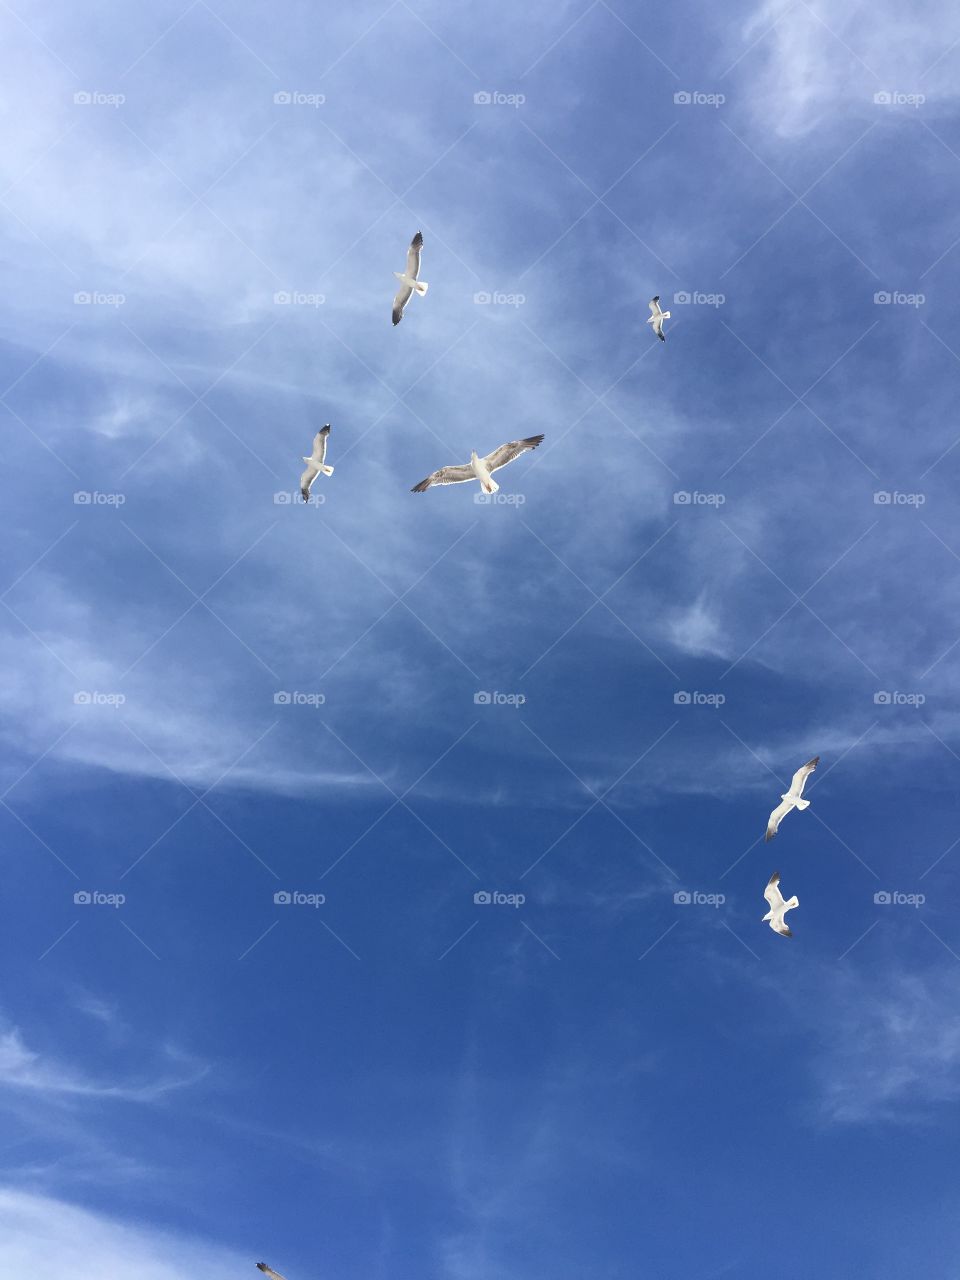 Shy seagulls in a blue sky, wildlife 